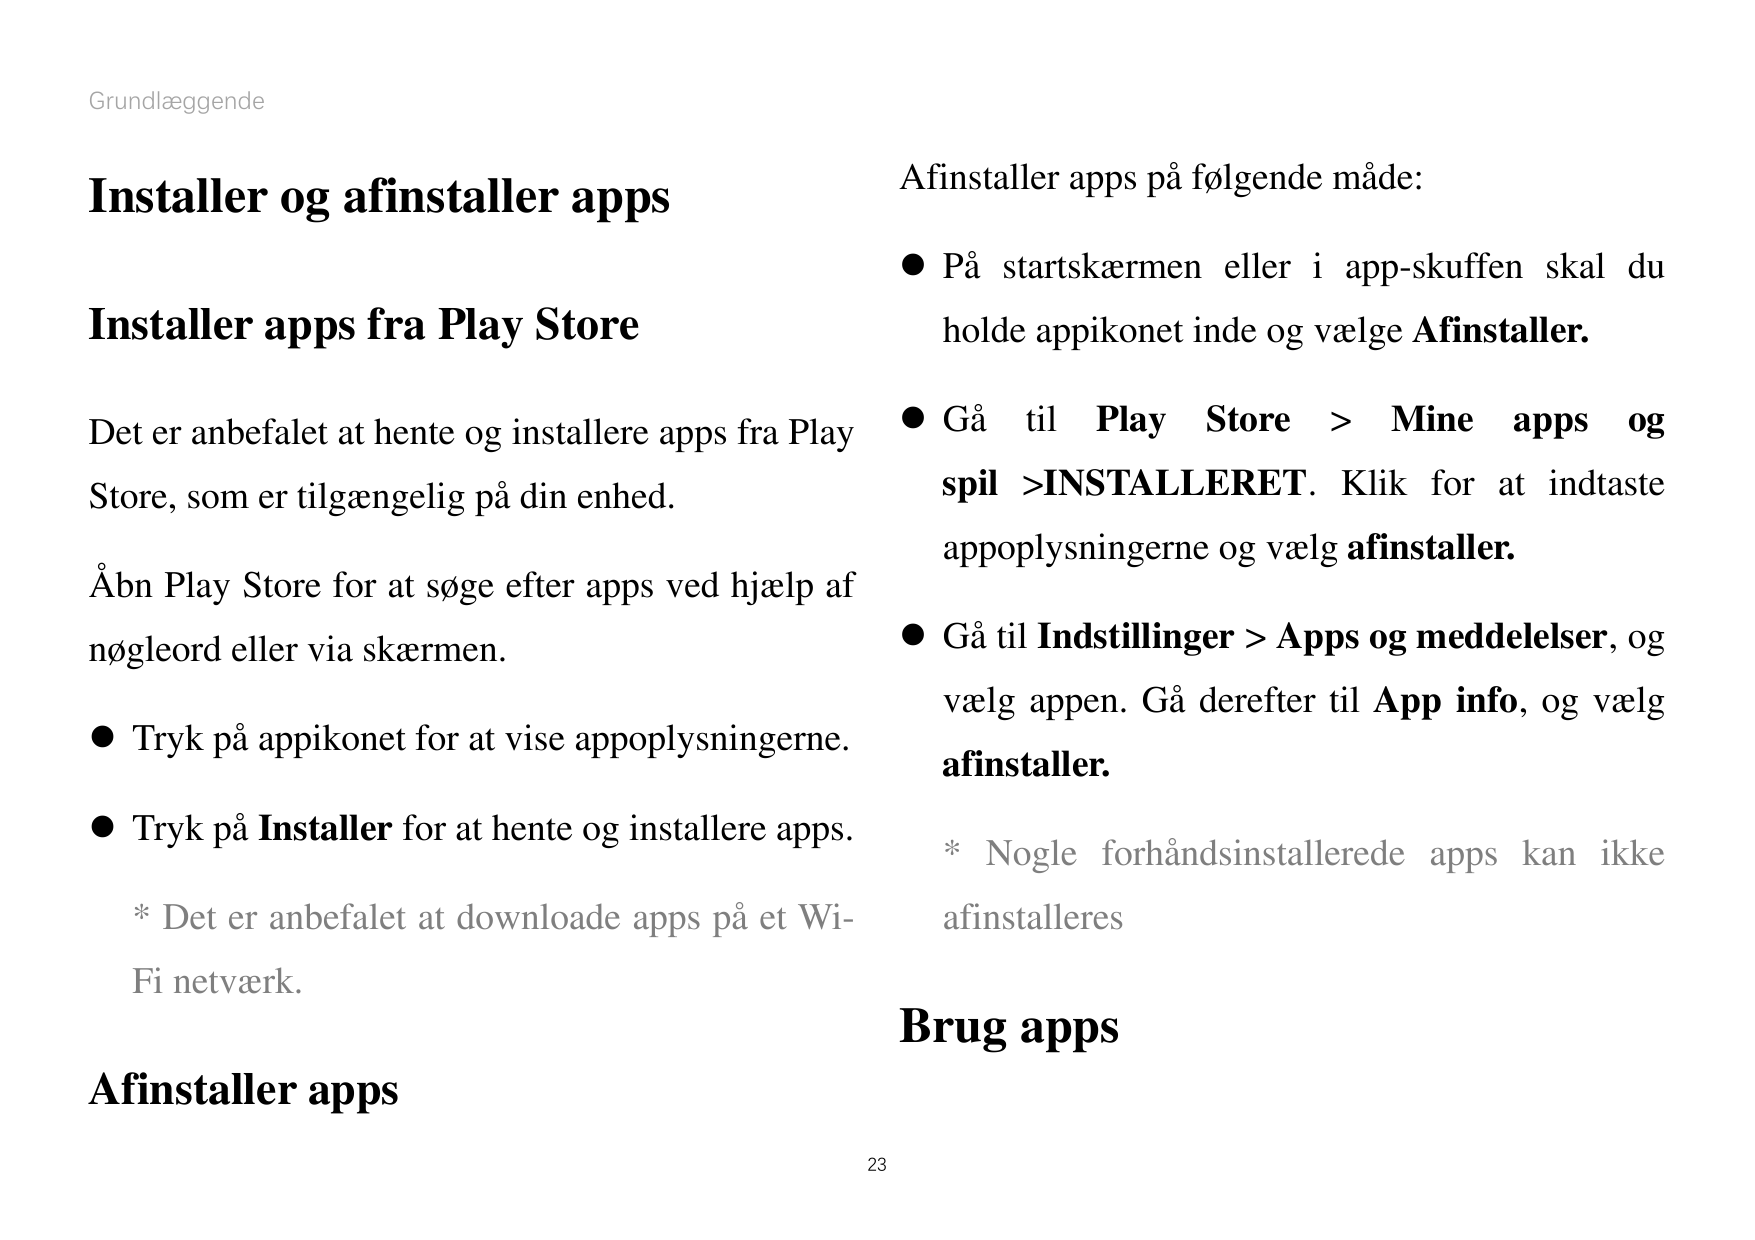 GrundlæggendeAfinstaller apps påfølgende måde:Installer og afinstaller apps På startskærmen eller i app-skuffen skal duInstalle